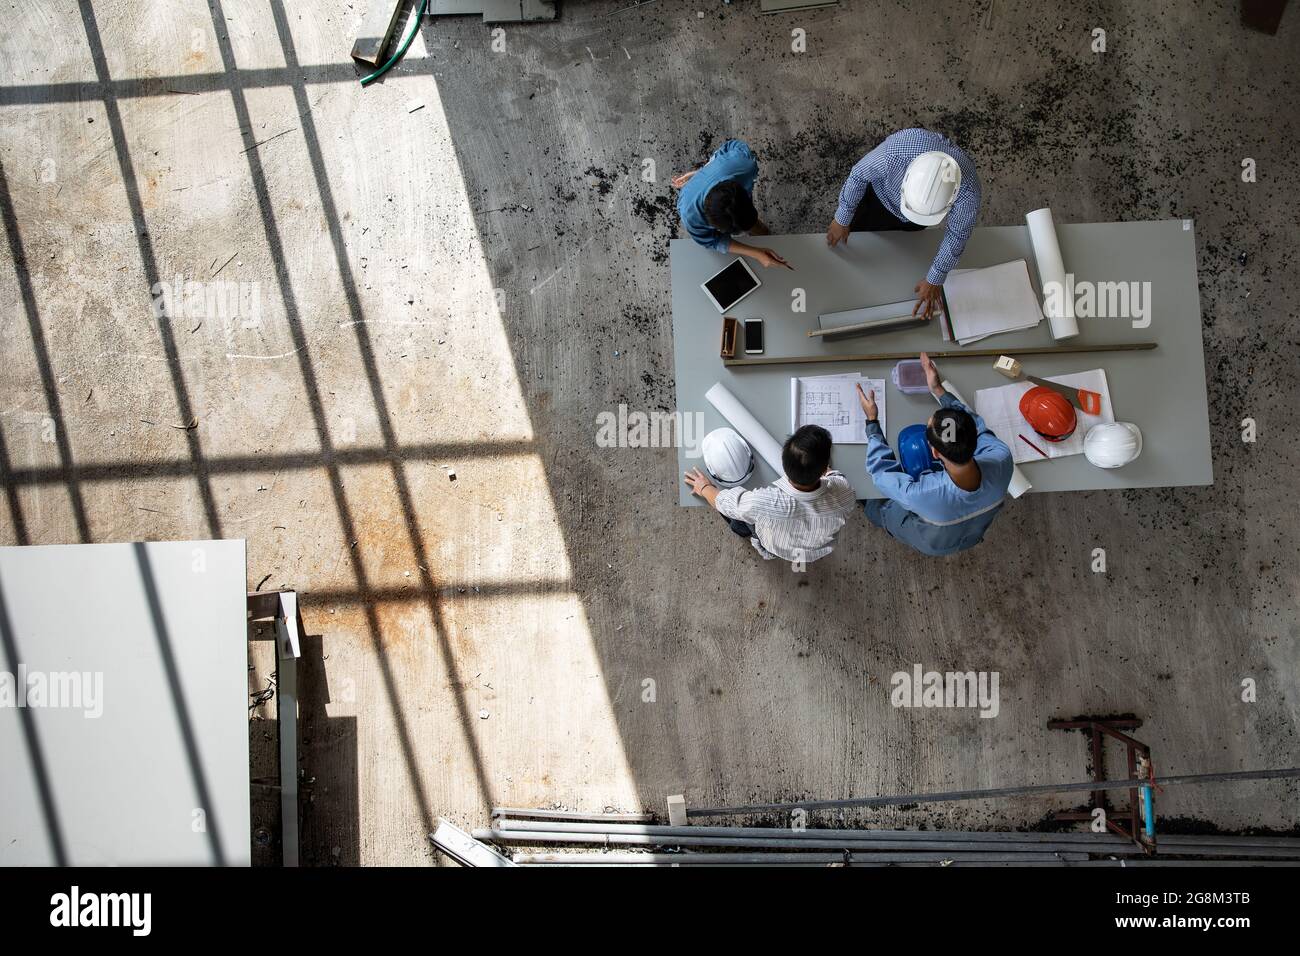 Vier Personen Team von Ingenieuren sprechen zusammen, um Baumaterial zu überprüfen, aufgenommen aus dem hohen Winkel, Draufsicht Foto Stockfoto